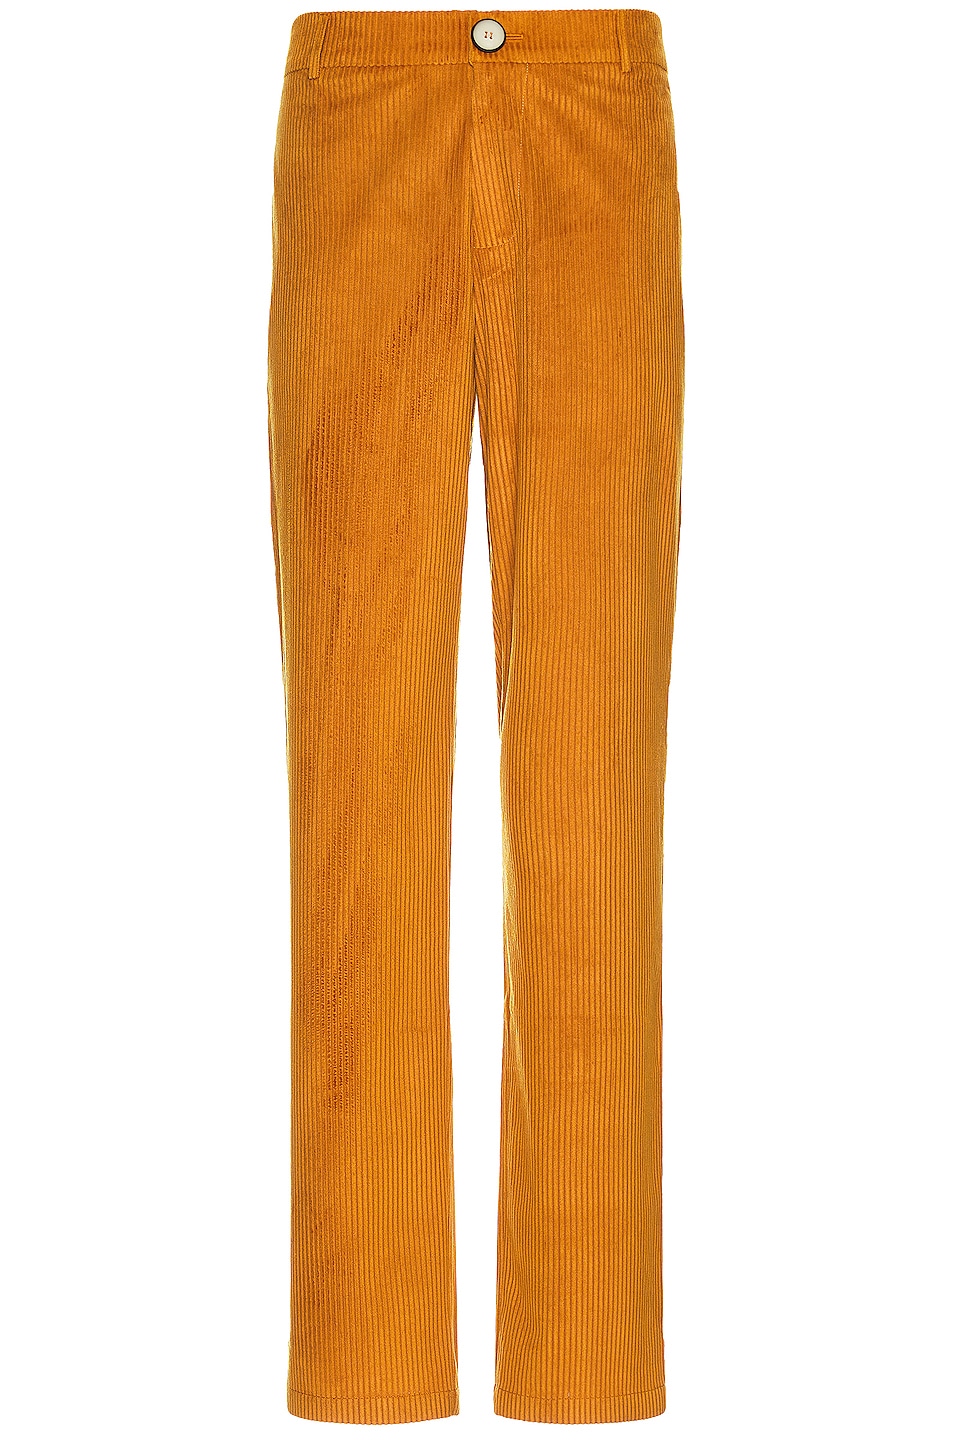 Image 1 of SIEDRES Corduroy Pants in Mustard